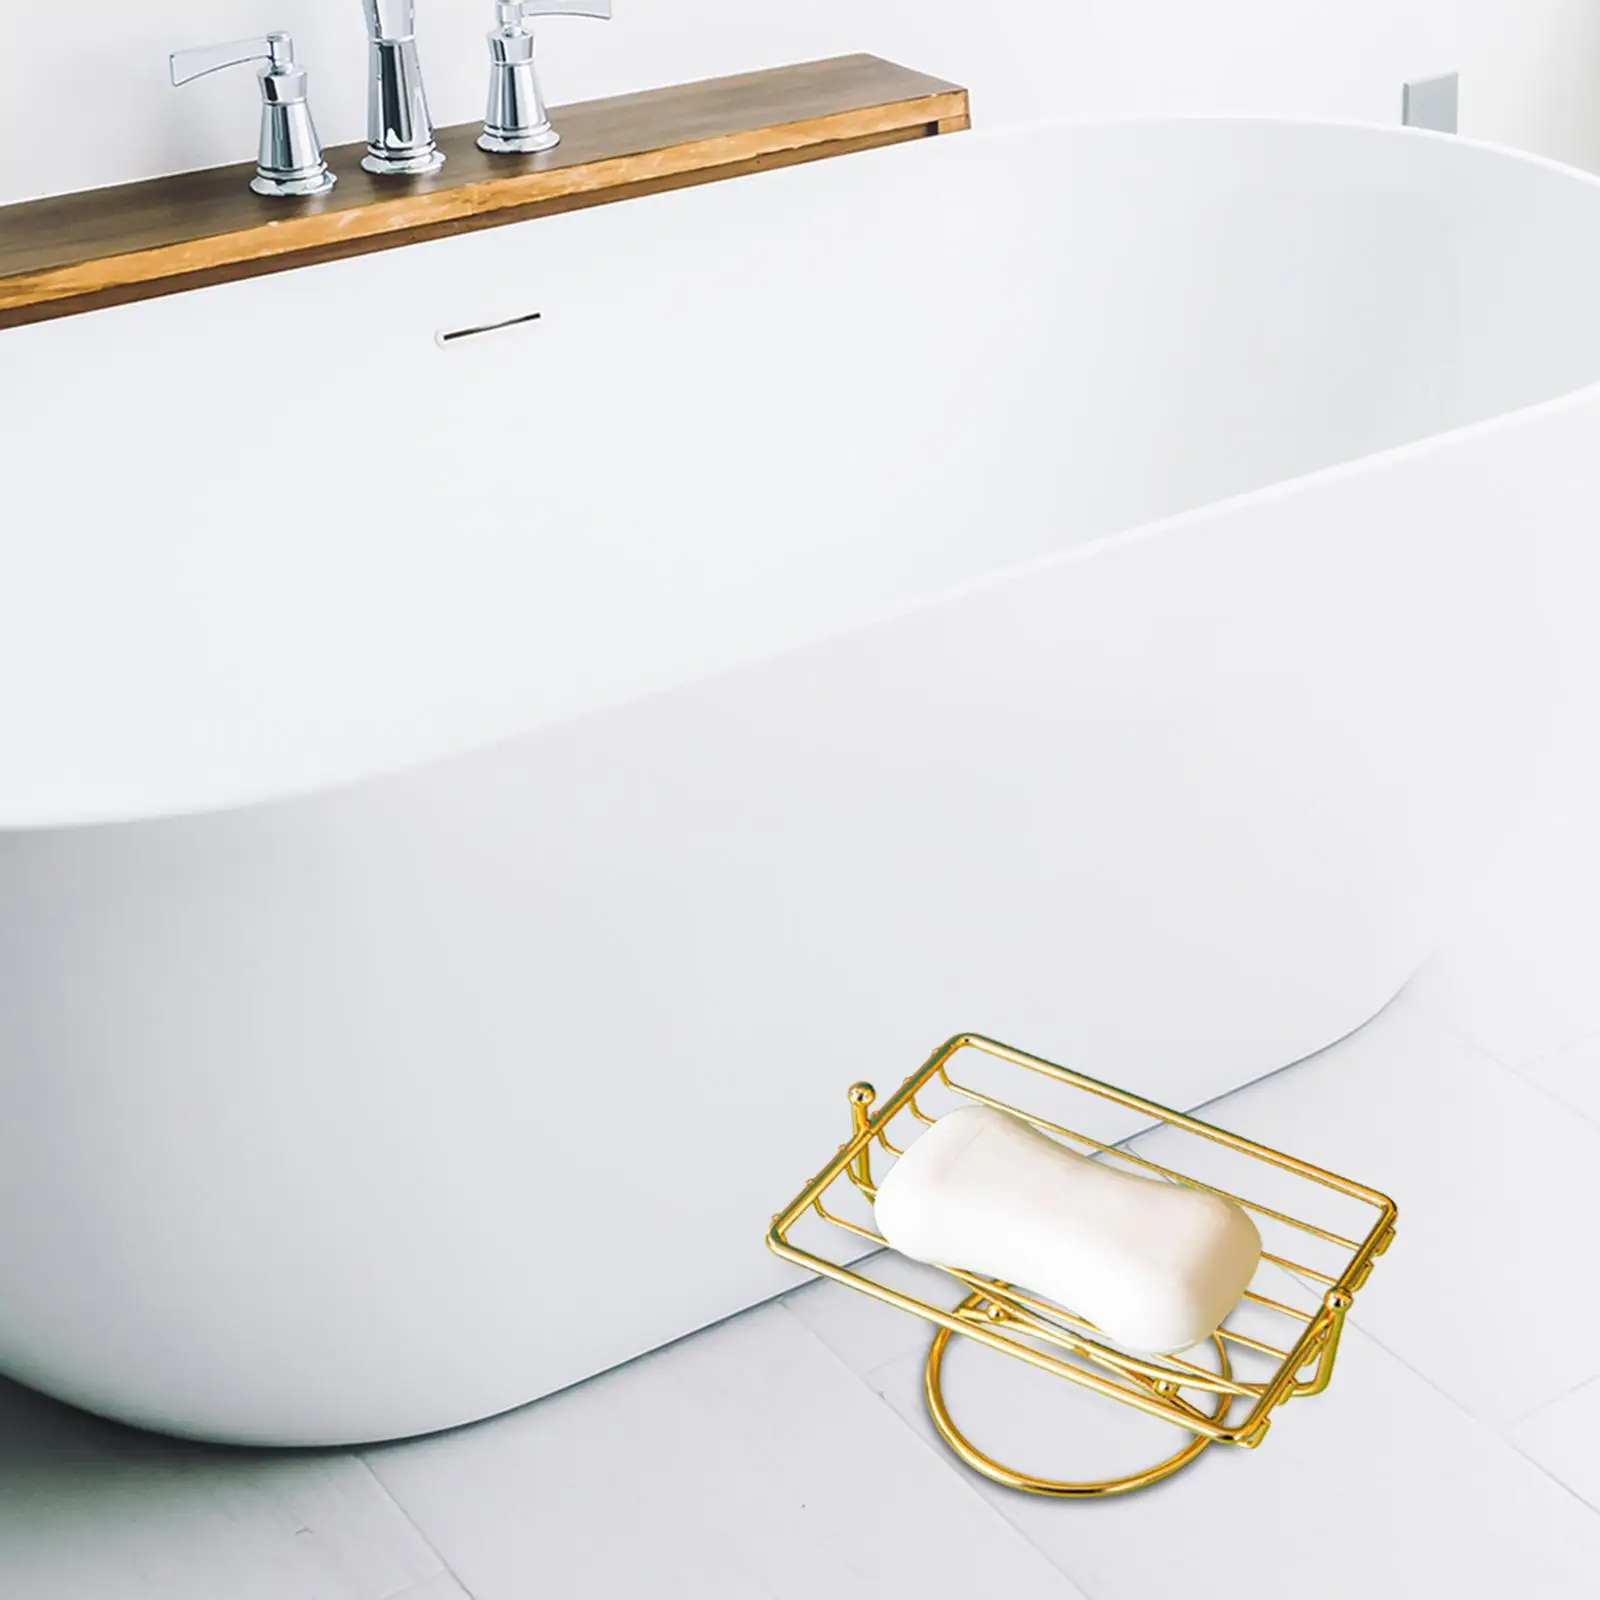 Stainless Steel Soap Sponge Holder Tray,Self Draining Shelf Rectangular Soap Saver for Bathroom Toilet Shower